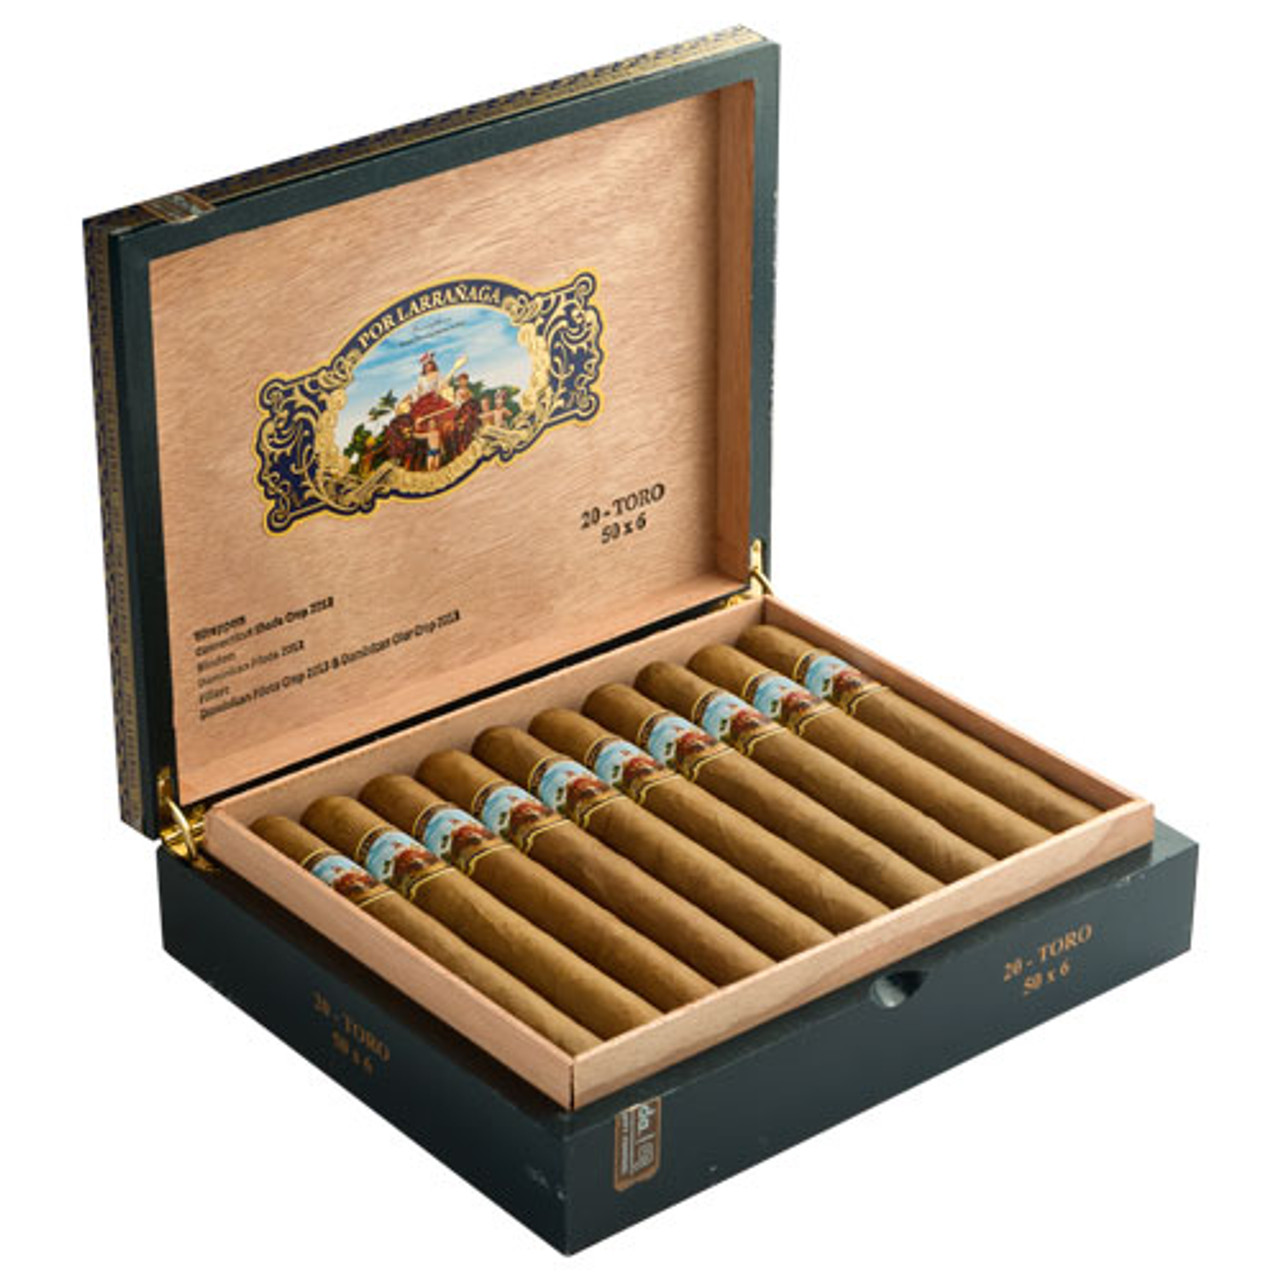 Por Larranaga Cigars - Gran Corona Cigars - 6 x 46 (Box of 20)